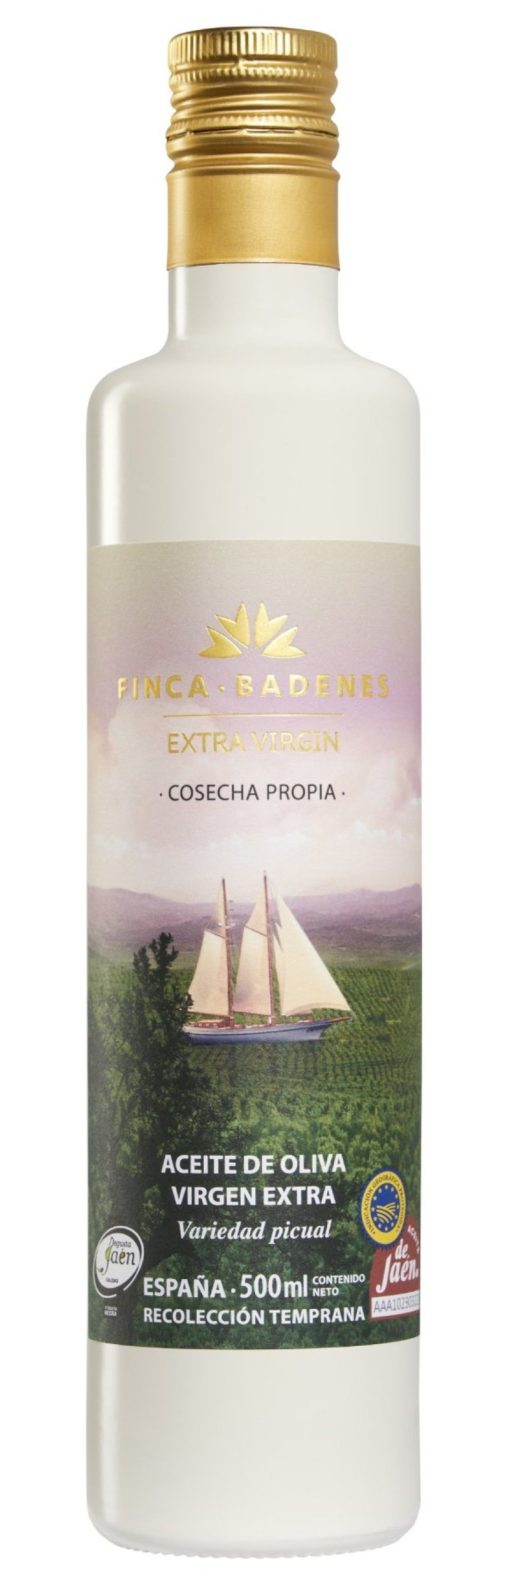 Aceite de Oliva Virgen Extra Finca Badenes Aires de Jaen 500 ml st 01 1685367330